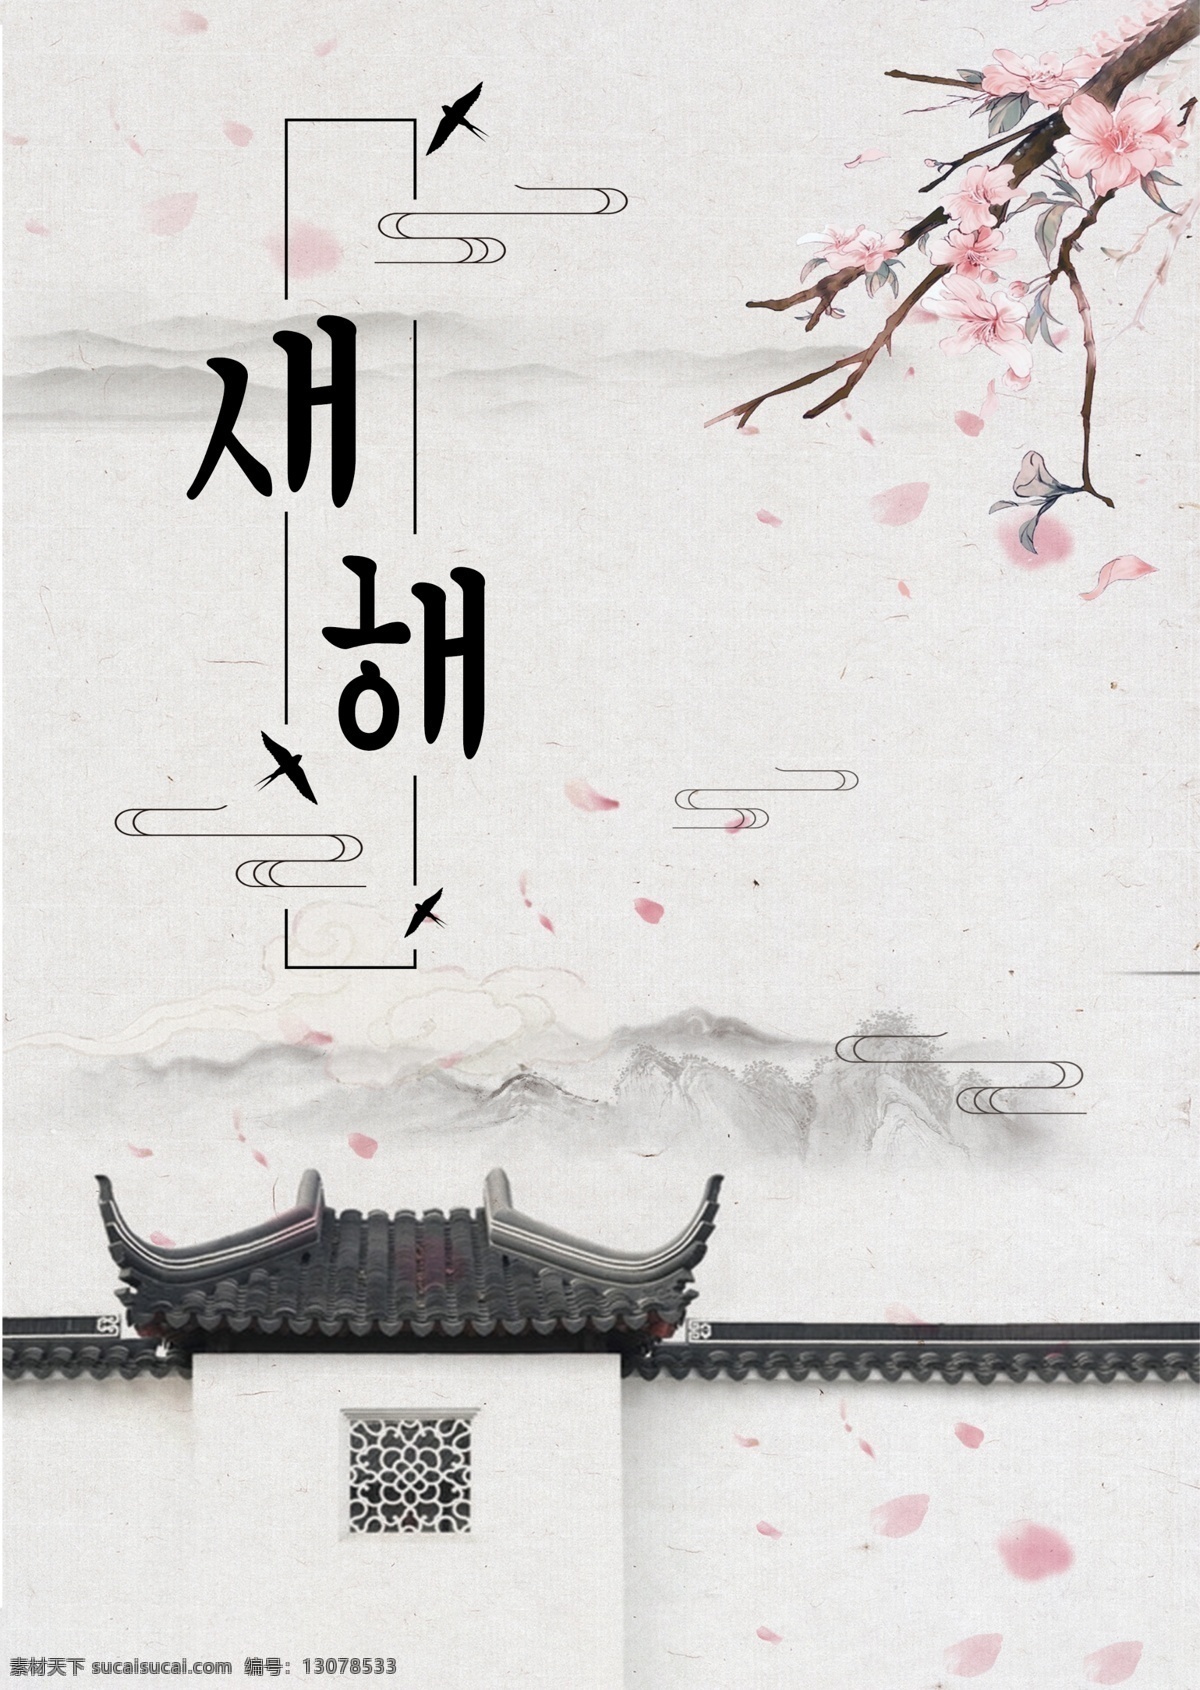 灰色 简单 古老 大厦 新年 海报 颜色 墨 冬季 朝鲜的 中文 英语 空白 美丽 礼品 古建筑 红色的花朵 粉 景观